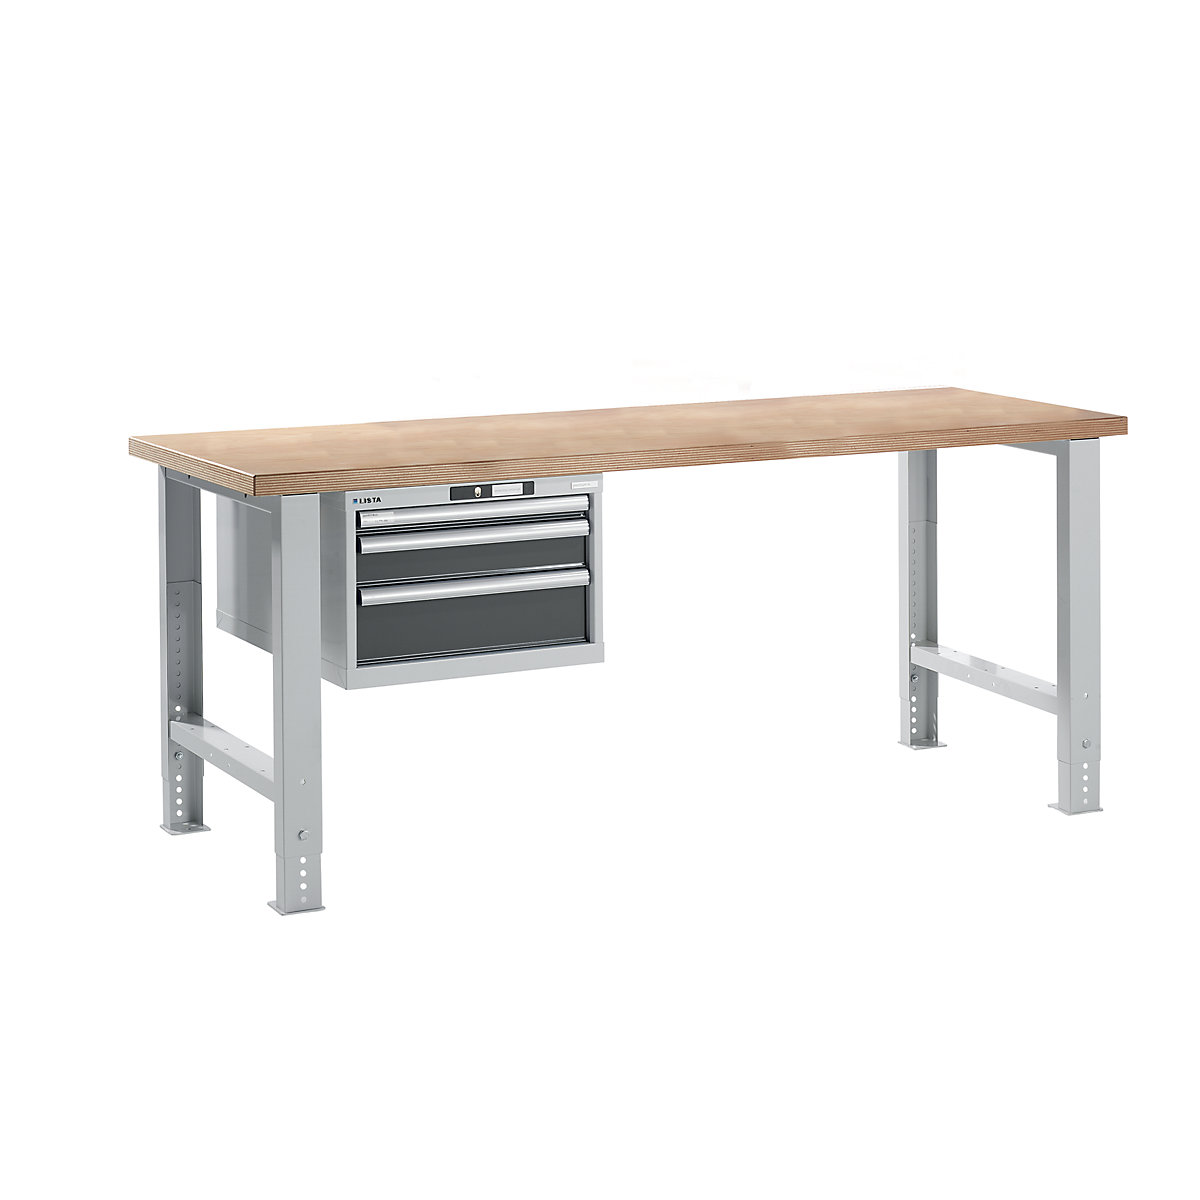 Dílenský stůl ve stavebnicovém systému – LISTA, výška 740 – 1090 mm, závěsná skříň, 3 zásuvky, šedá metalíza, šířka stolu 2000 mm-12